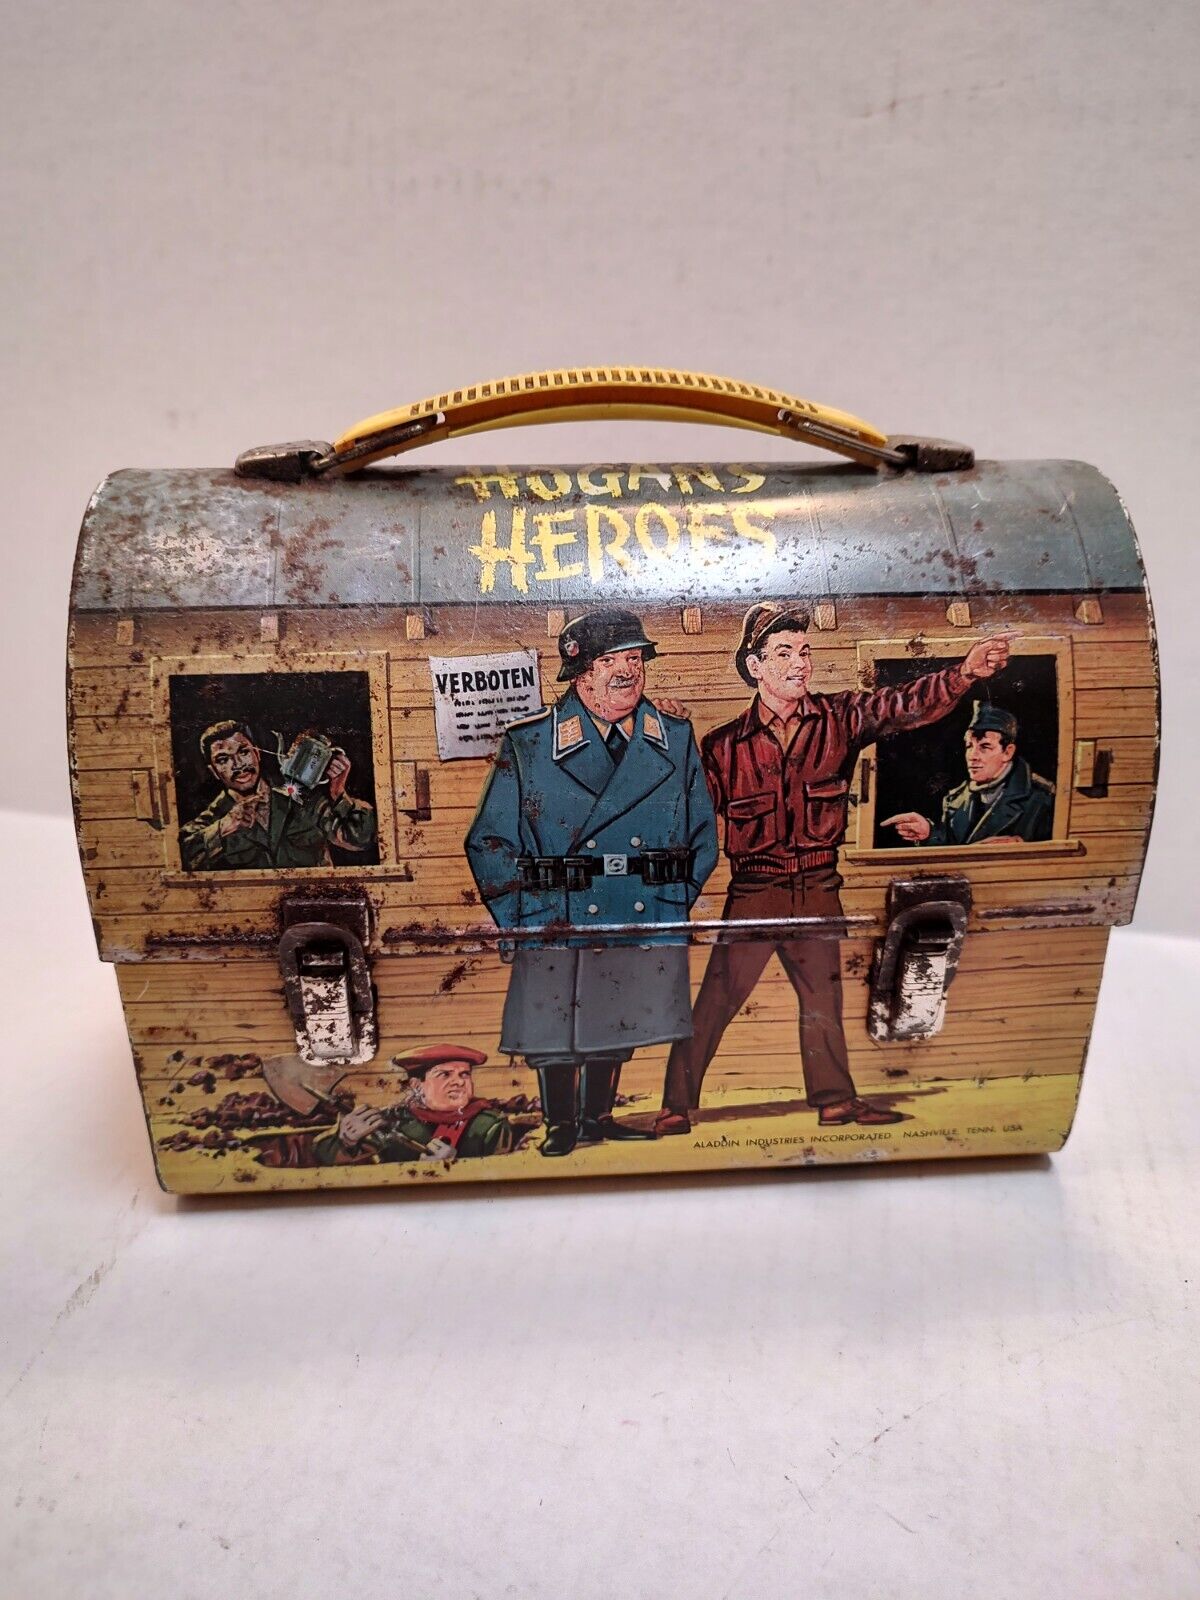 Vintage Hogan's Heroes Lunchbox (1966)